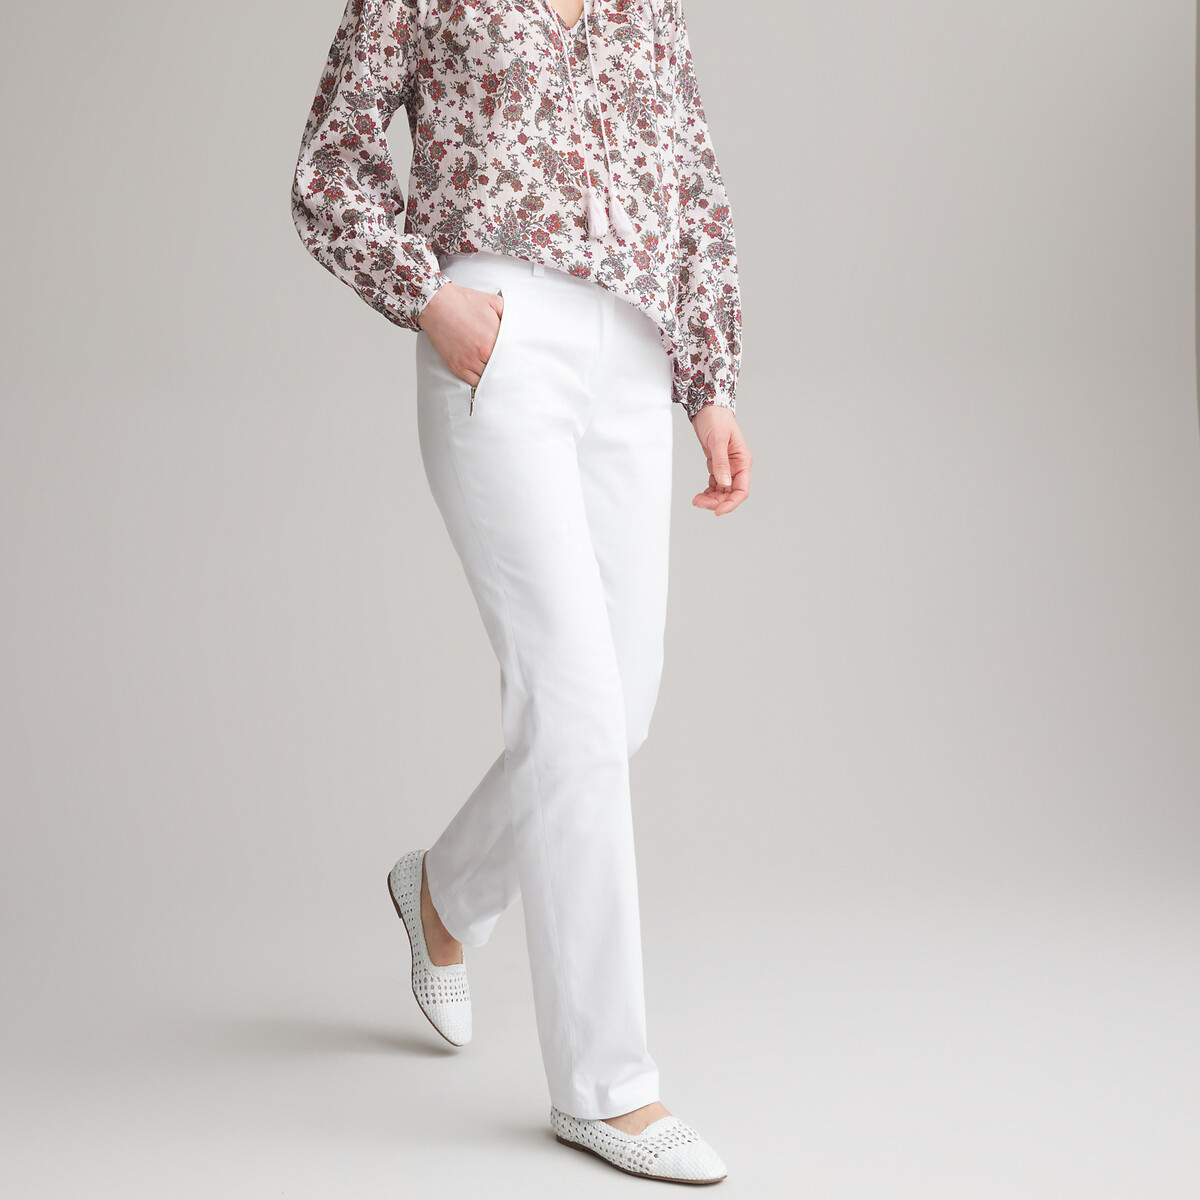 Белые брюки женские - купить в Москве белые штаны для женщин